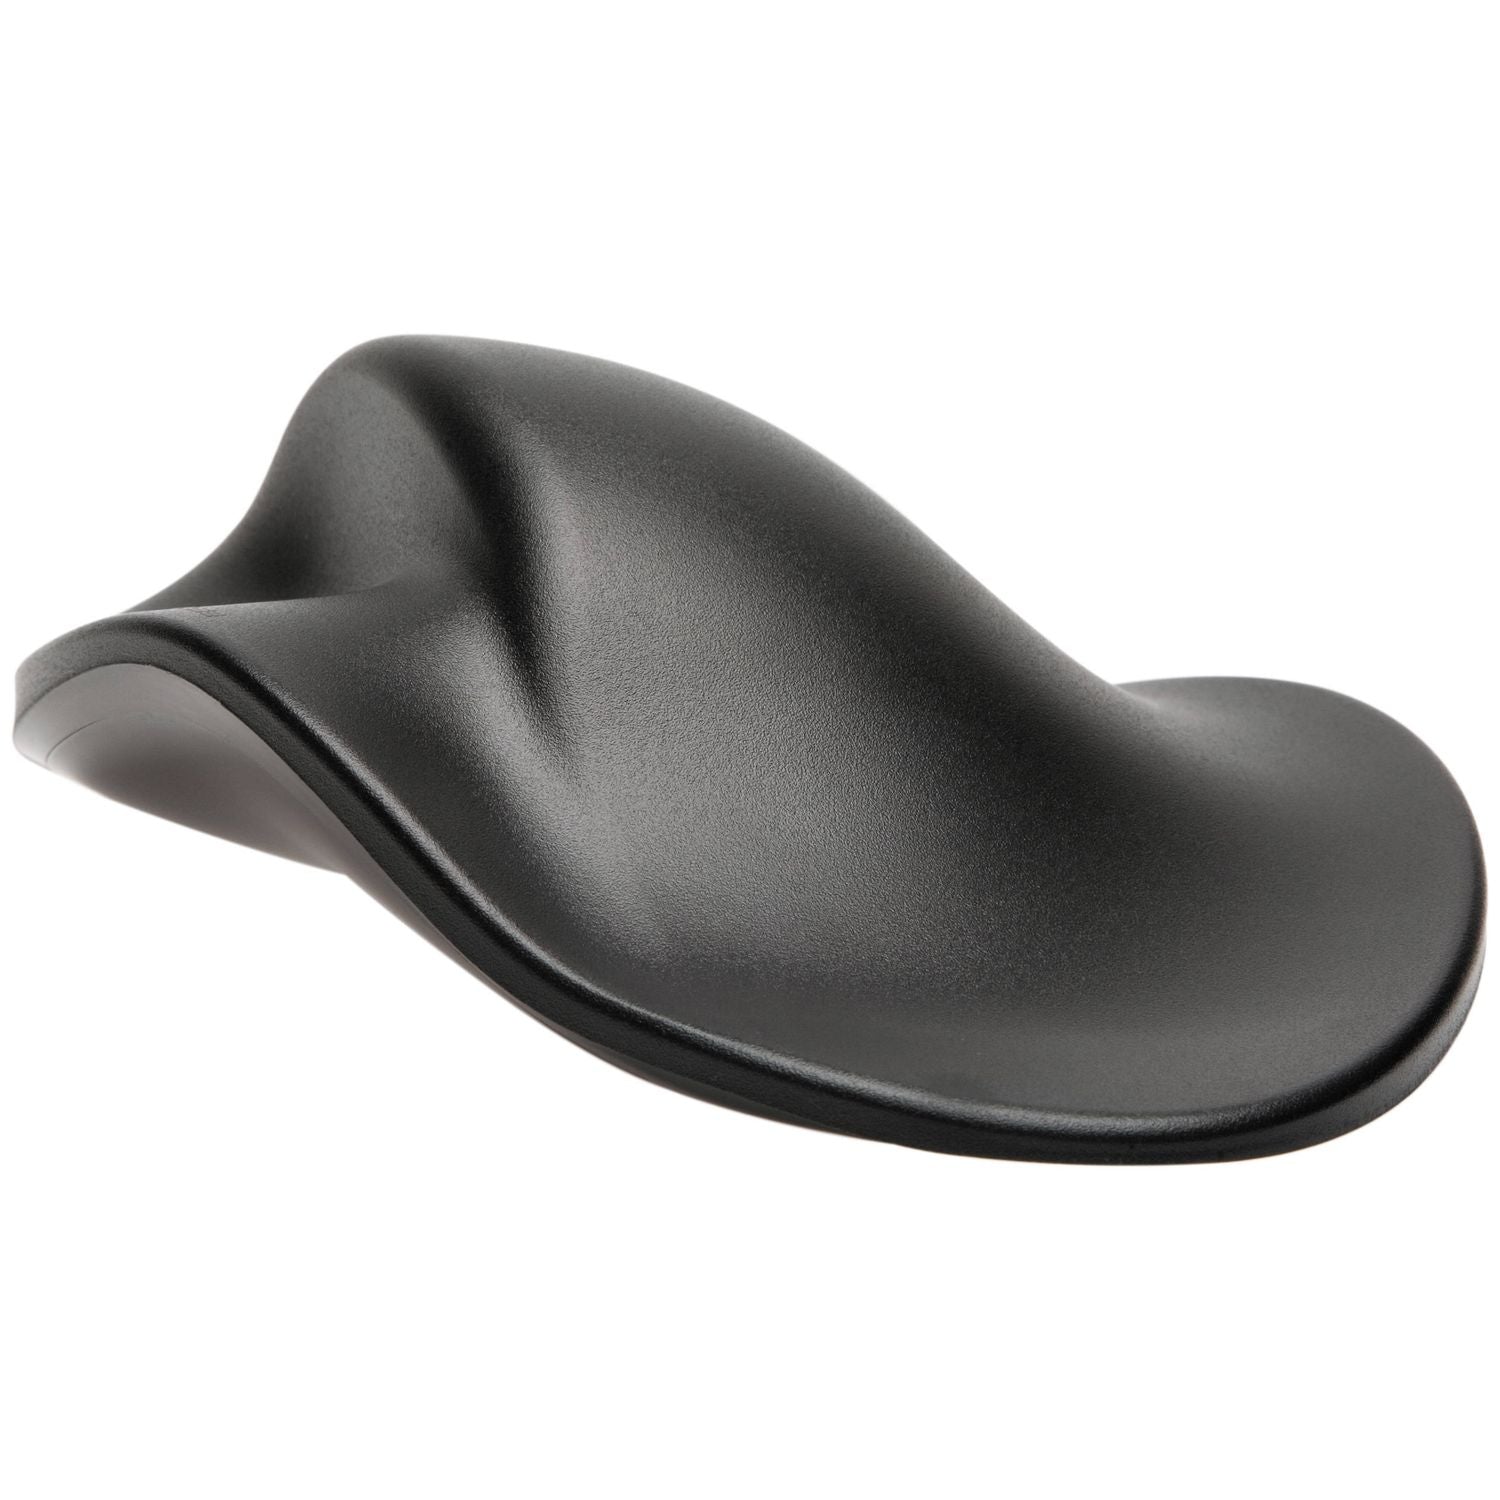 Hippus HandShoe Mouse M2UB-LC Medium Black